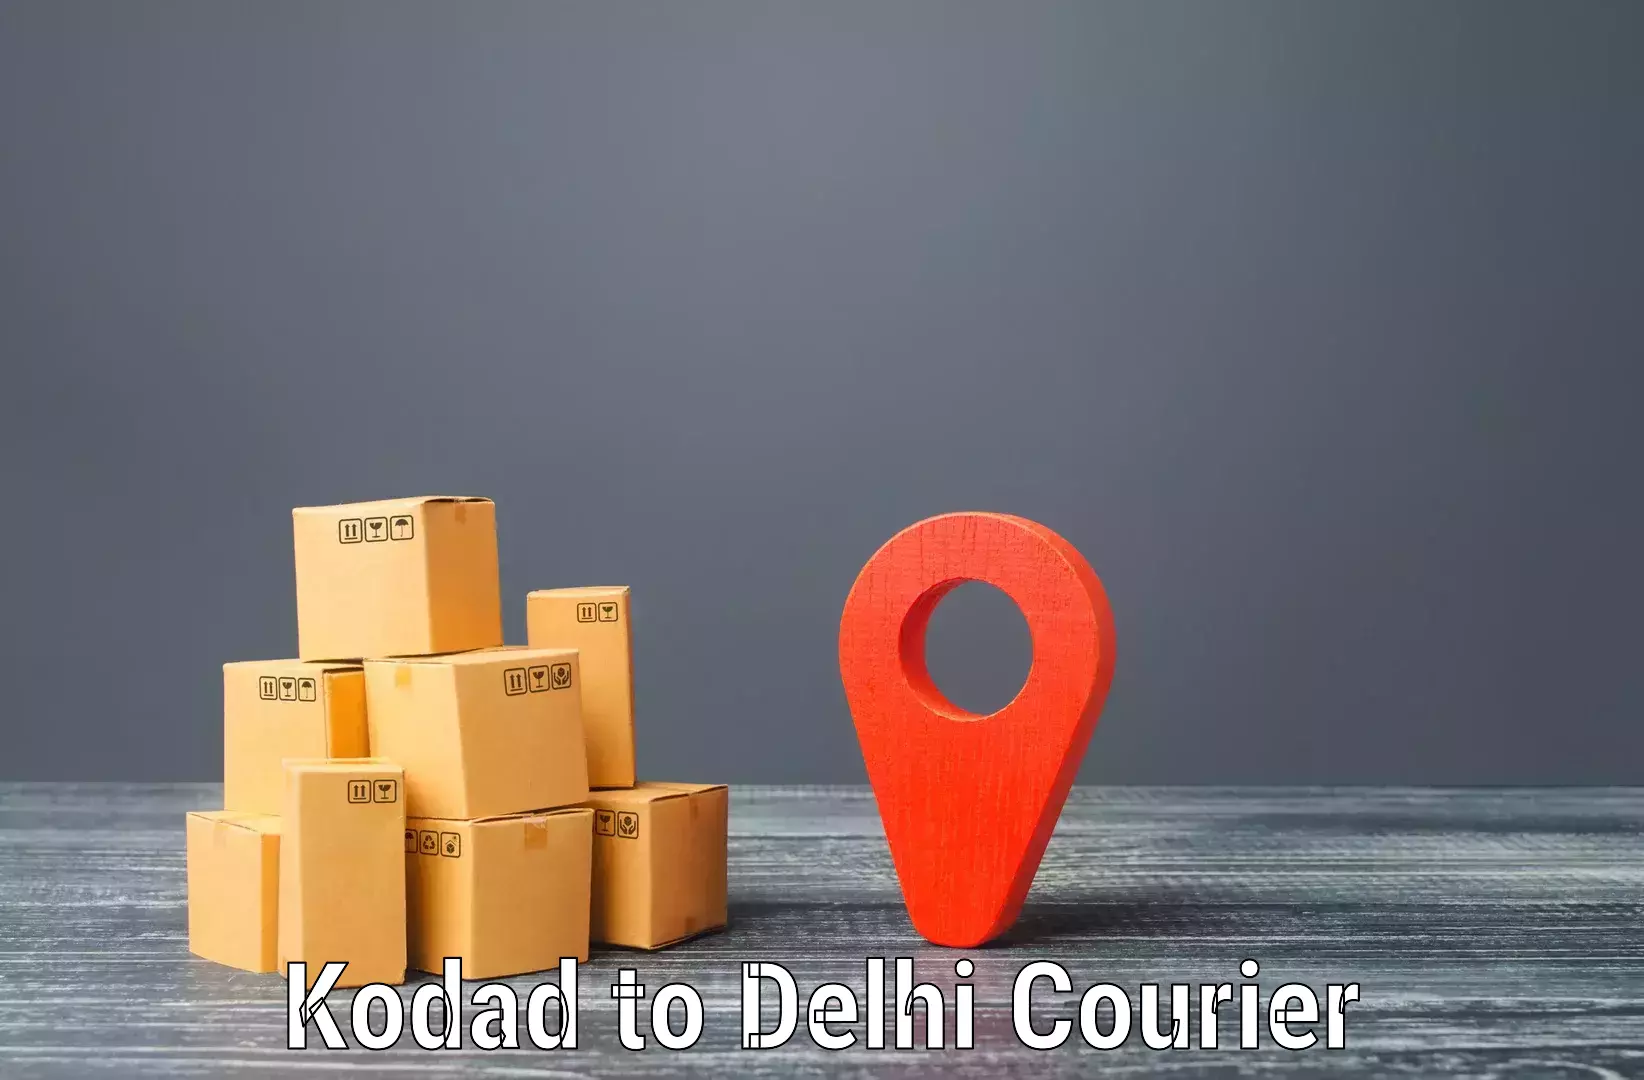 Fast delivery service Kodad to Delhi